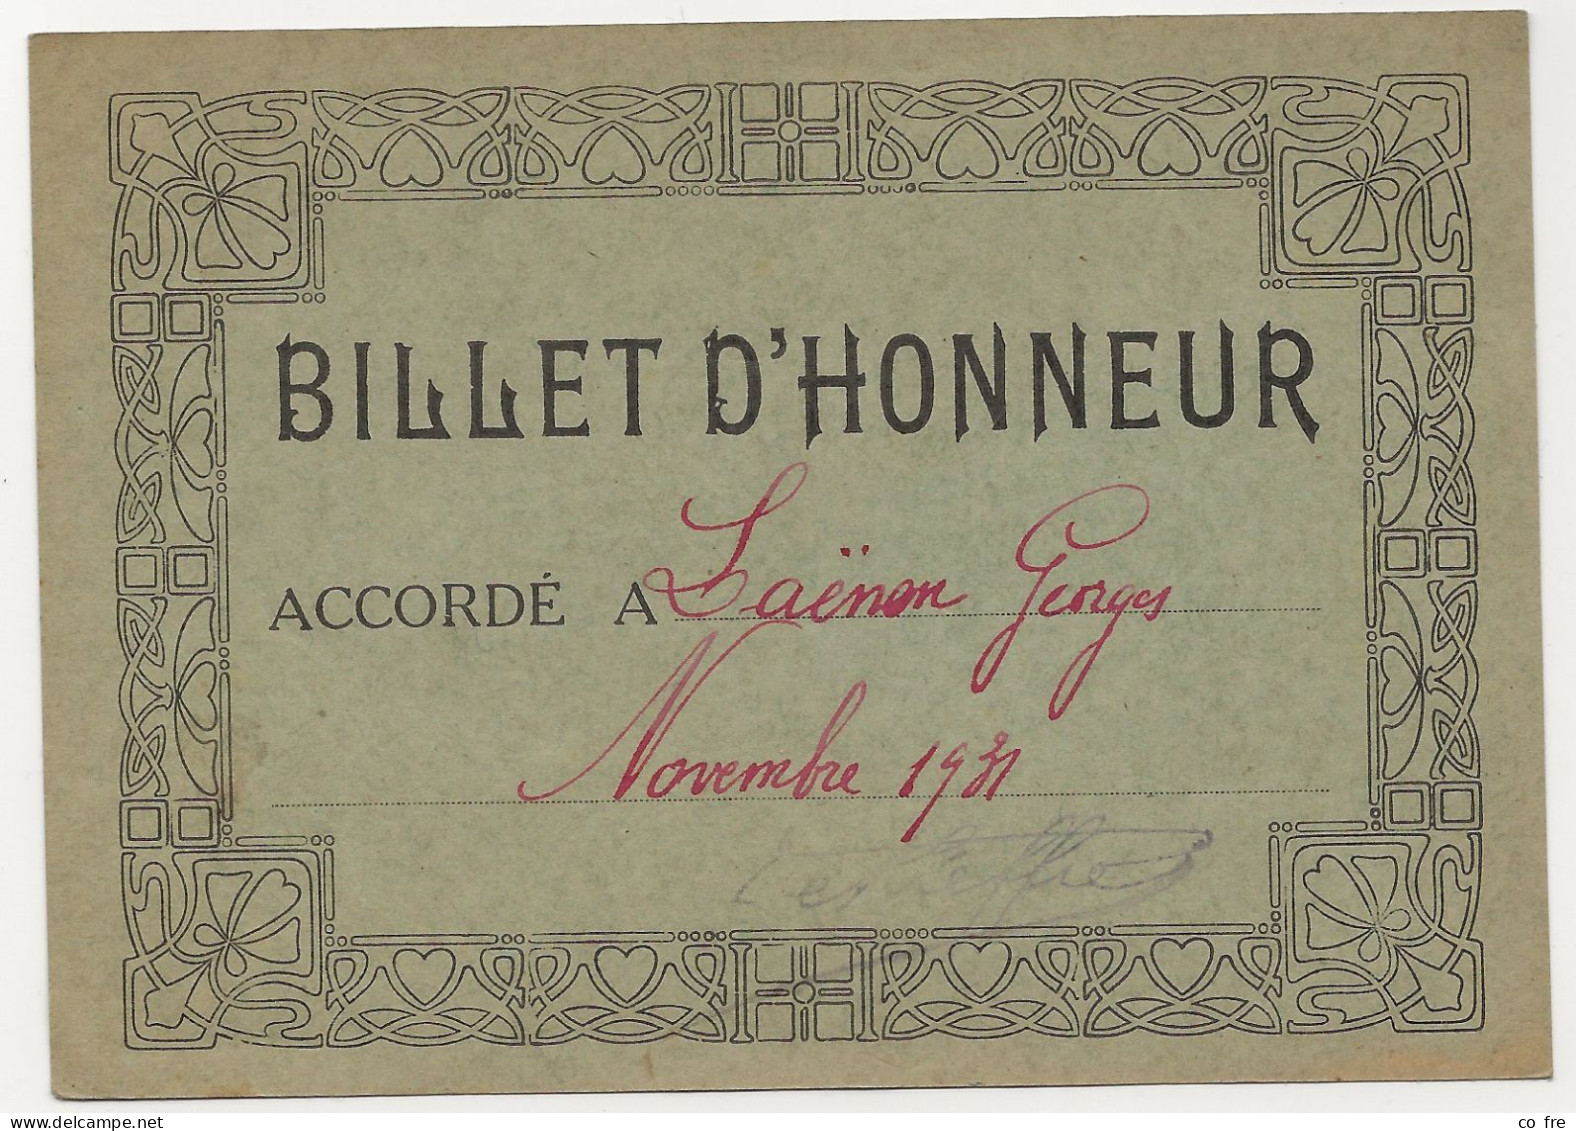 Billet D'honneur De 1931 Pour G. Laenens - Diploma & School Reports